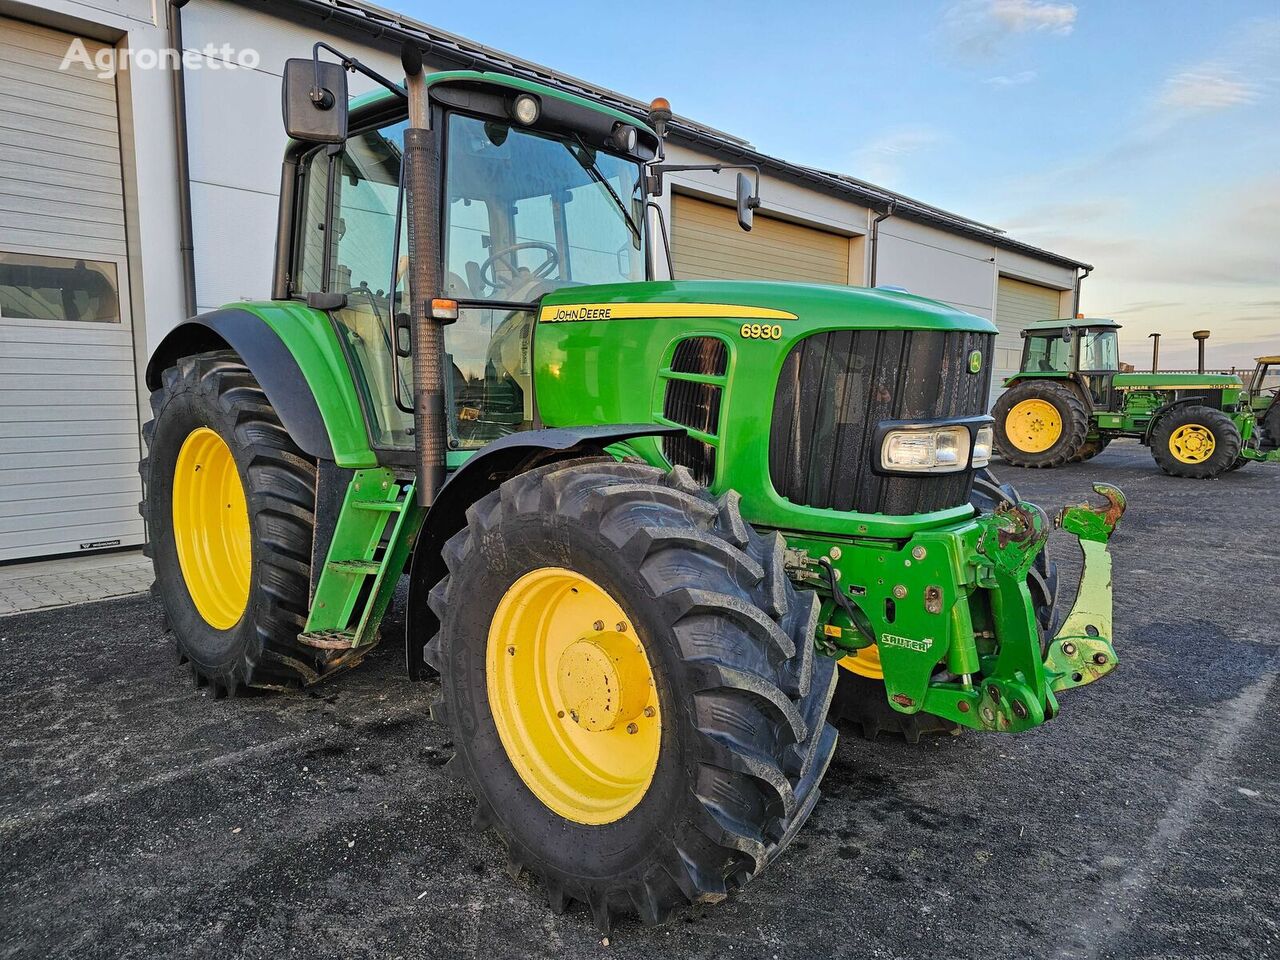 John Deere 6930 wheel tractor